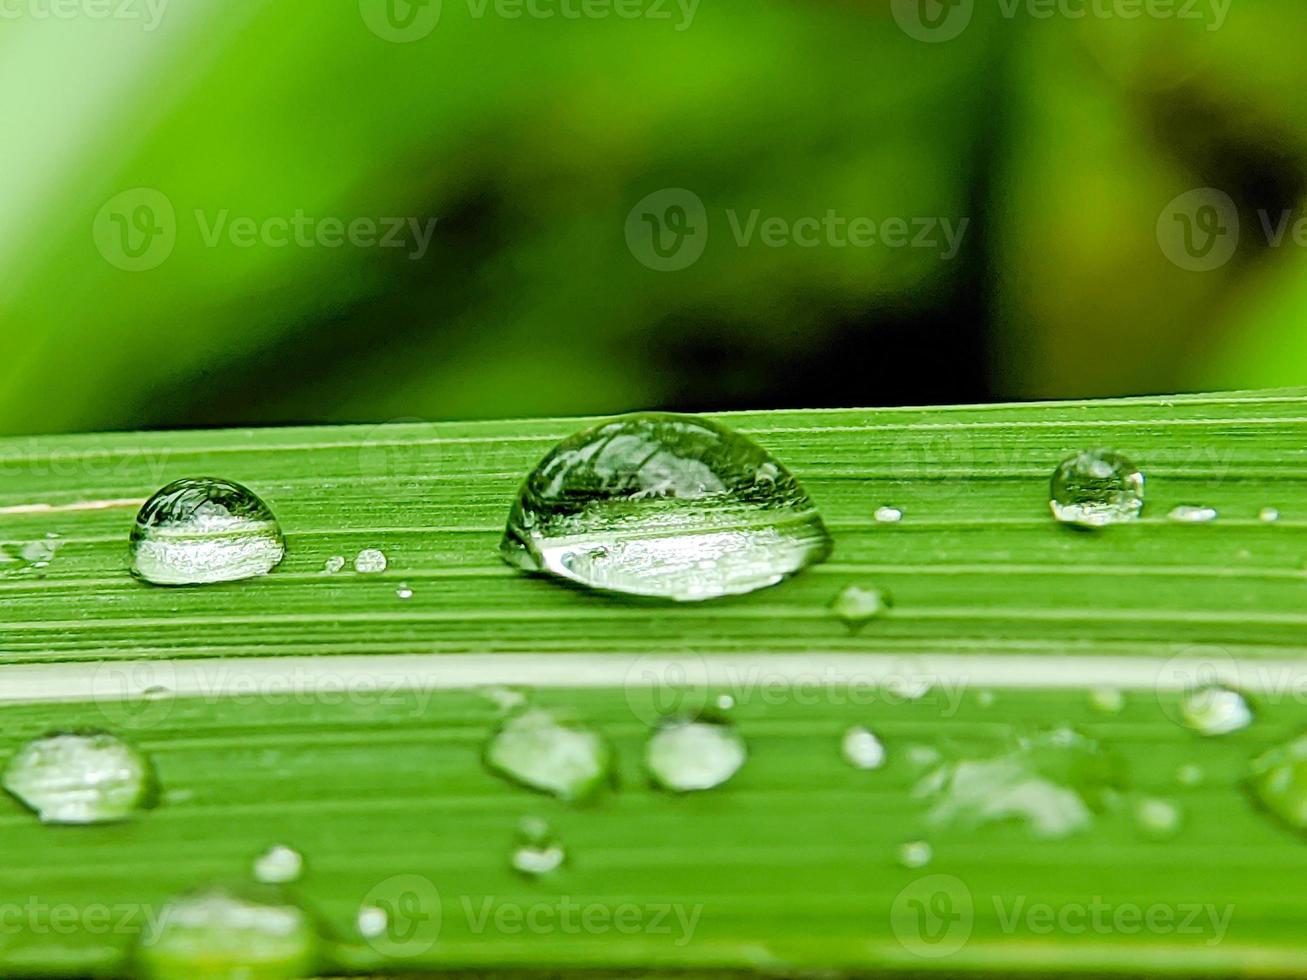 gotas de lluvia sobre hojas verdes frescas foto